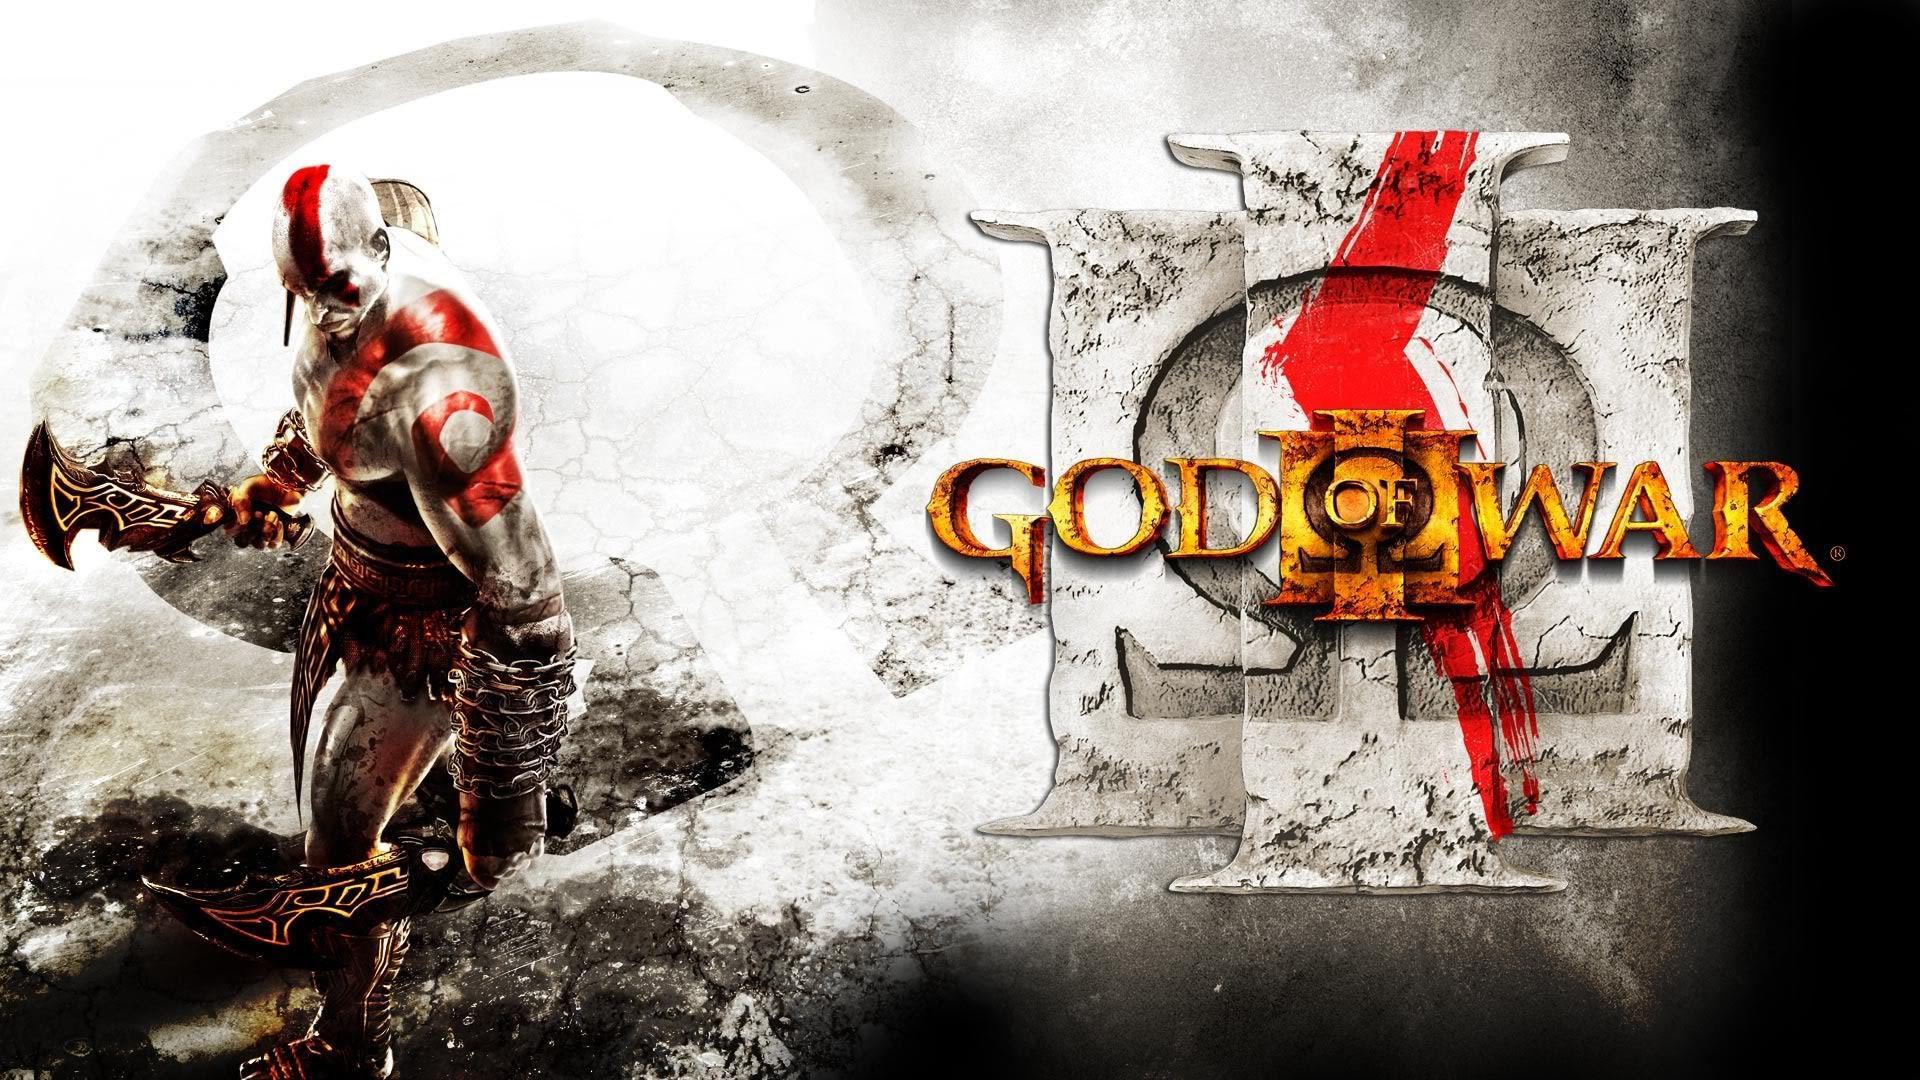 God of War 3 Logo HD Wallpaper - WallpaperFX